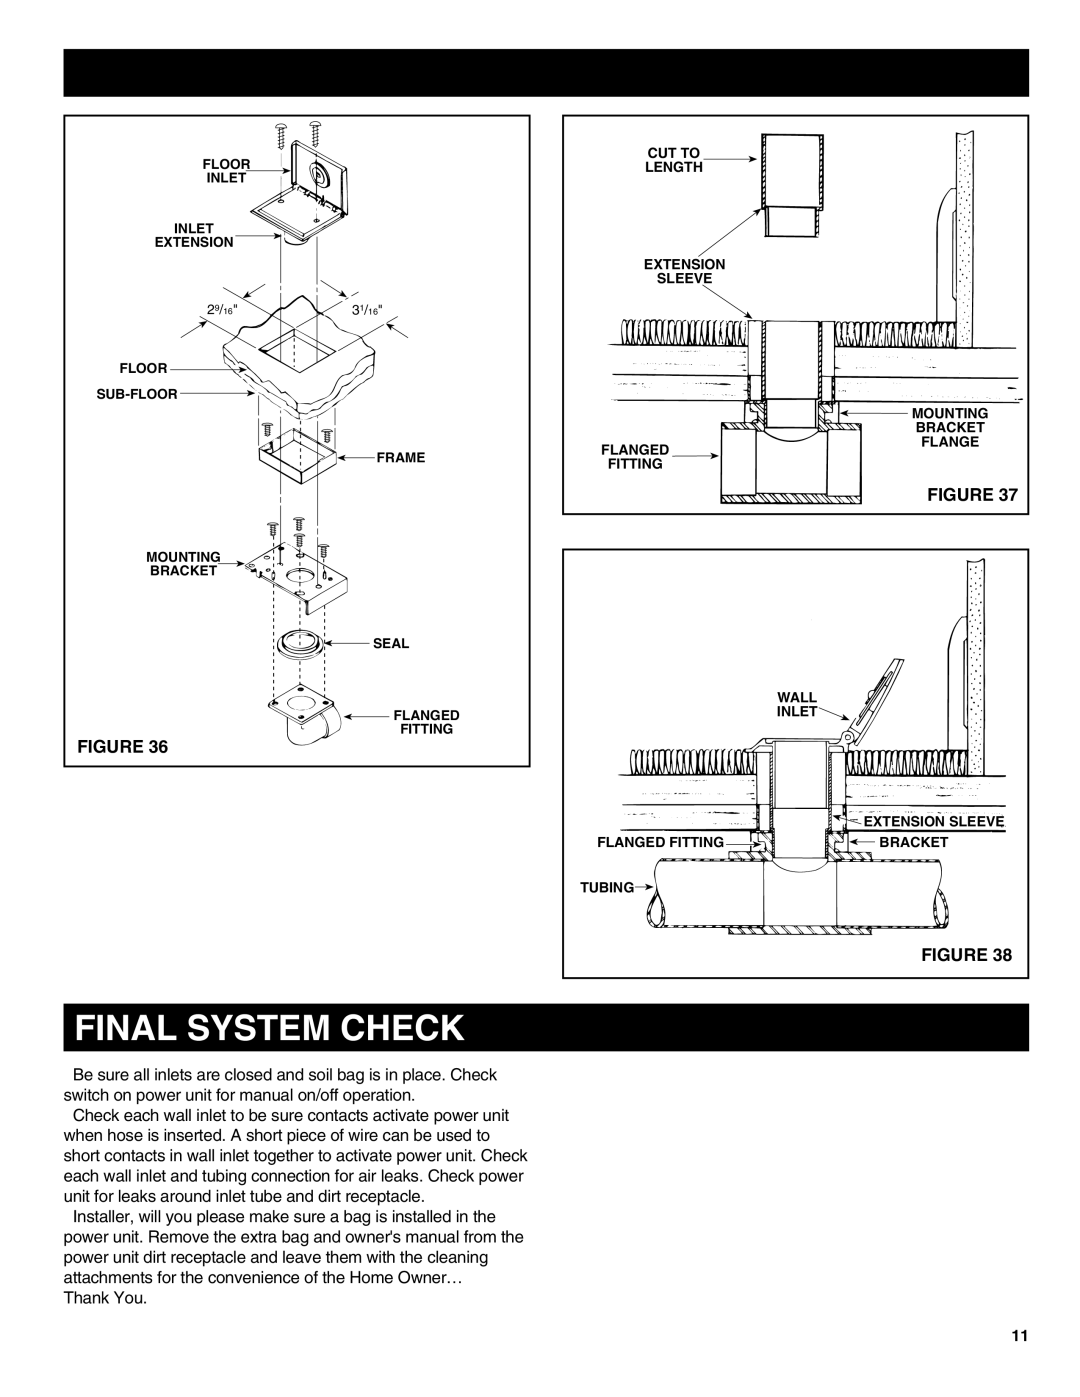 NuTone CV352 manual Final System Check 